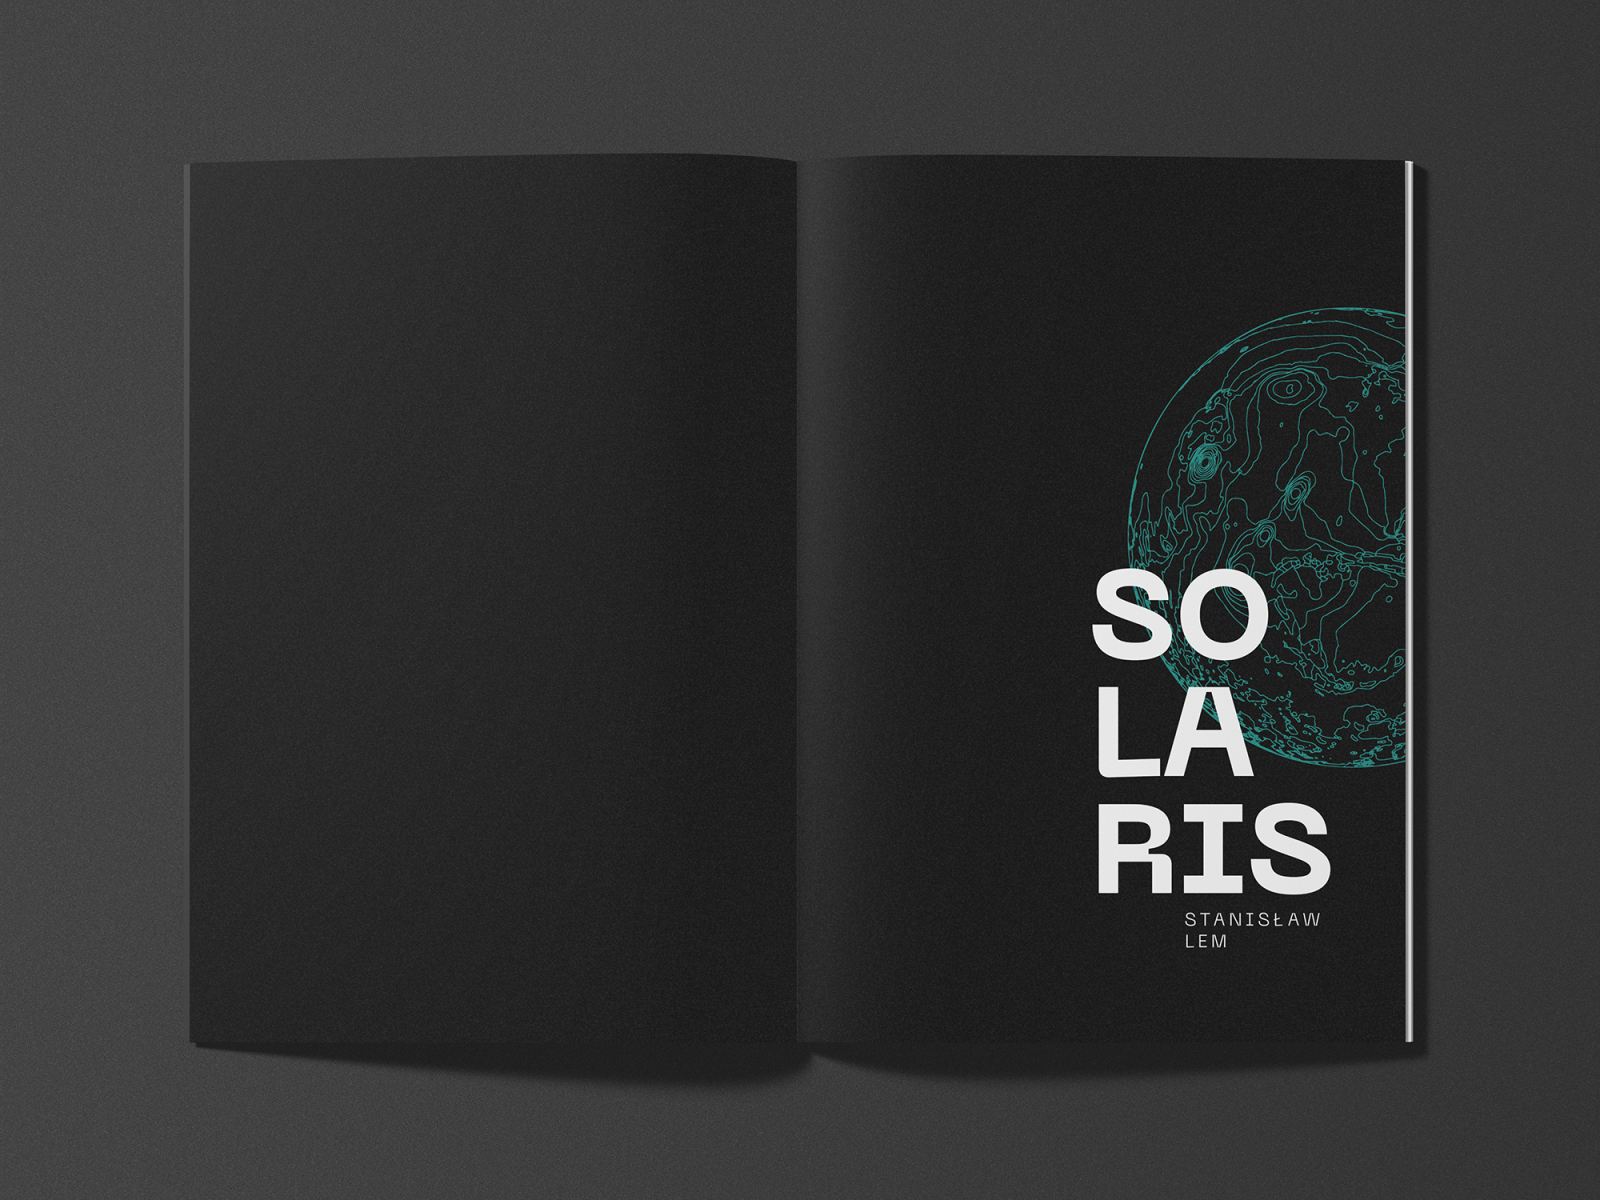 solaris-book-design-half-title-page-by-grzegorz-dobrzycki-on-dribbble